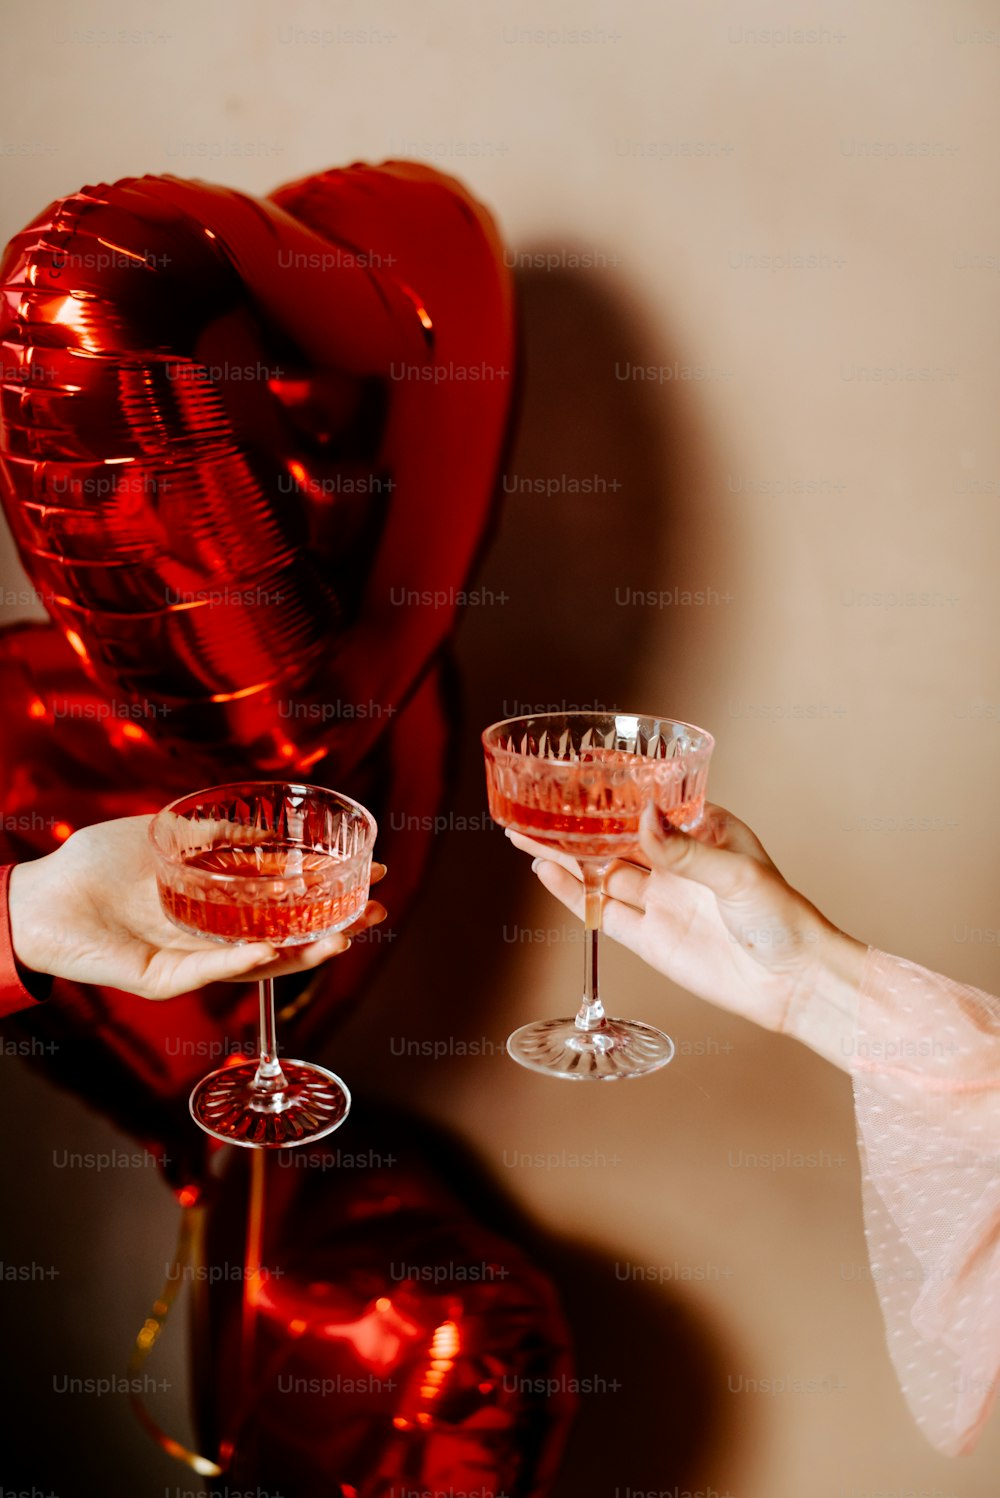 una persona sosteniendo dos copas de vino frente a globos